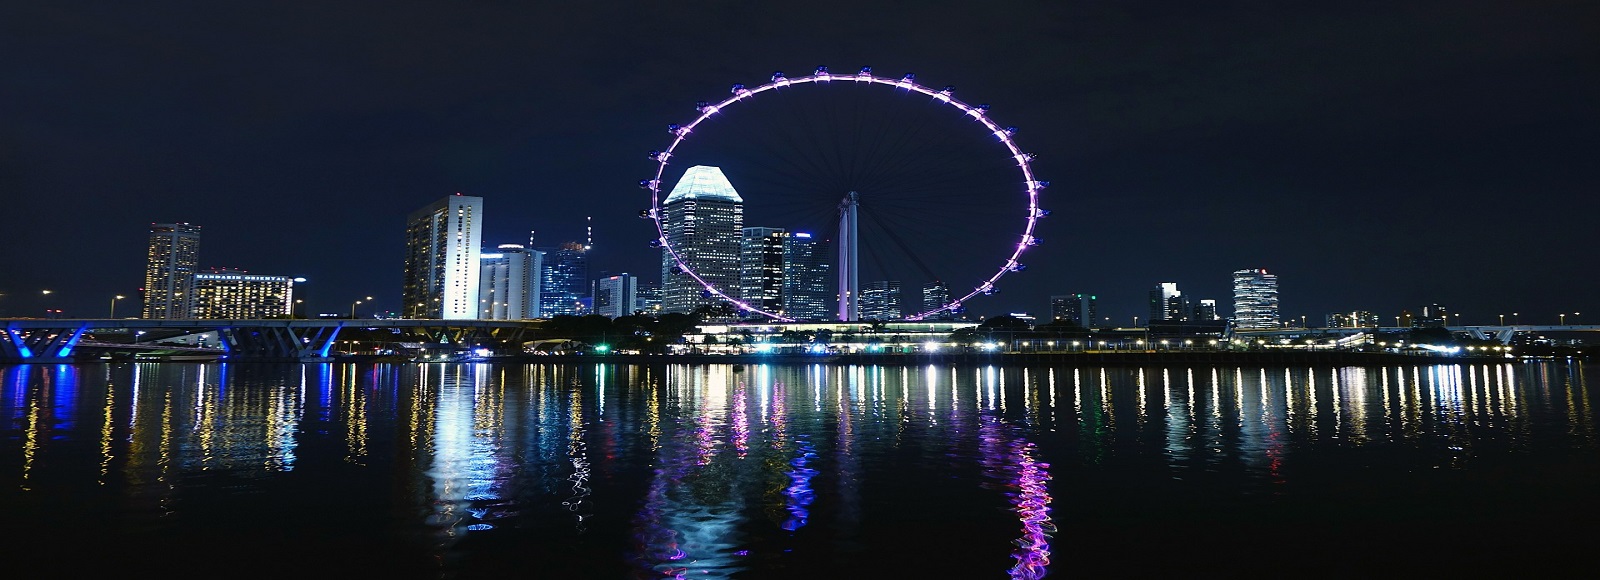 Ofertas de Traslados en Singapur. Traslados económicos en Singapur 